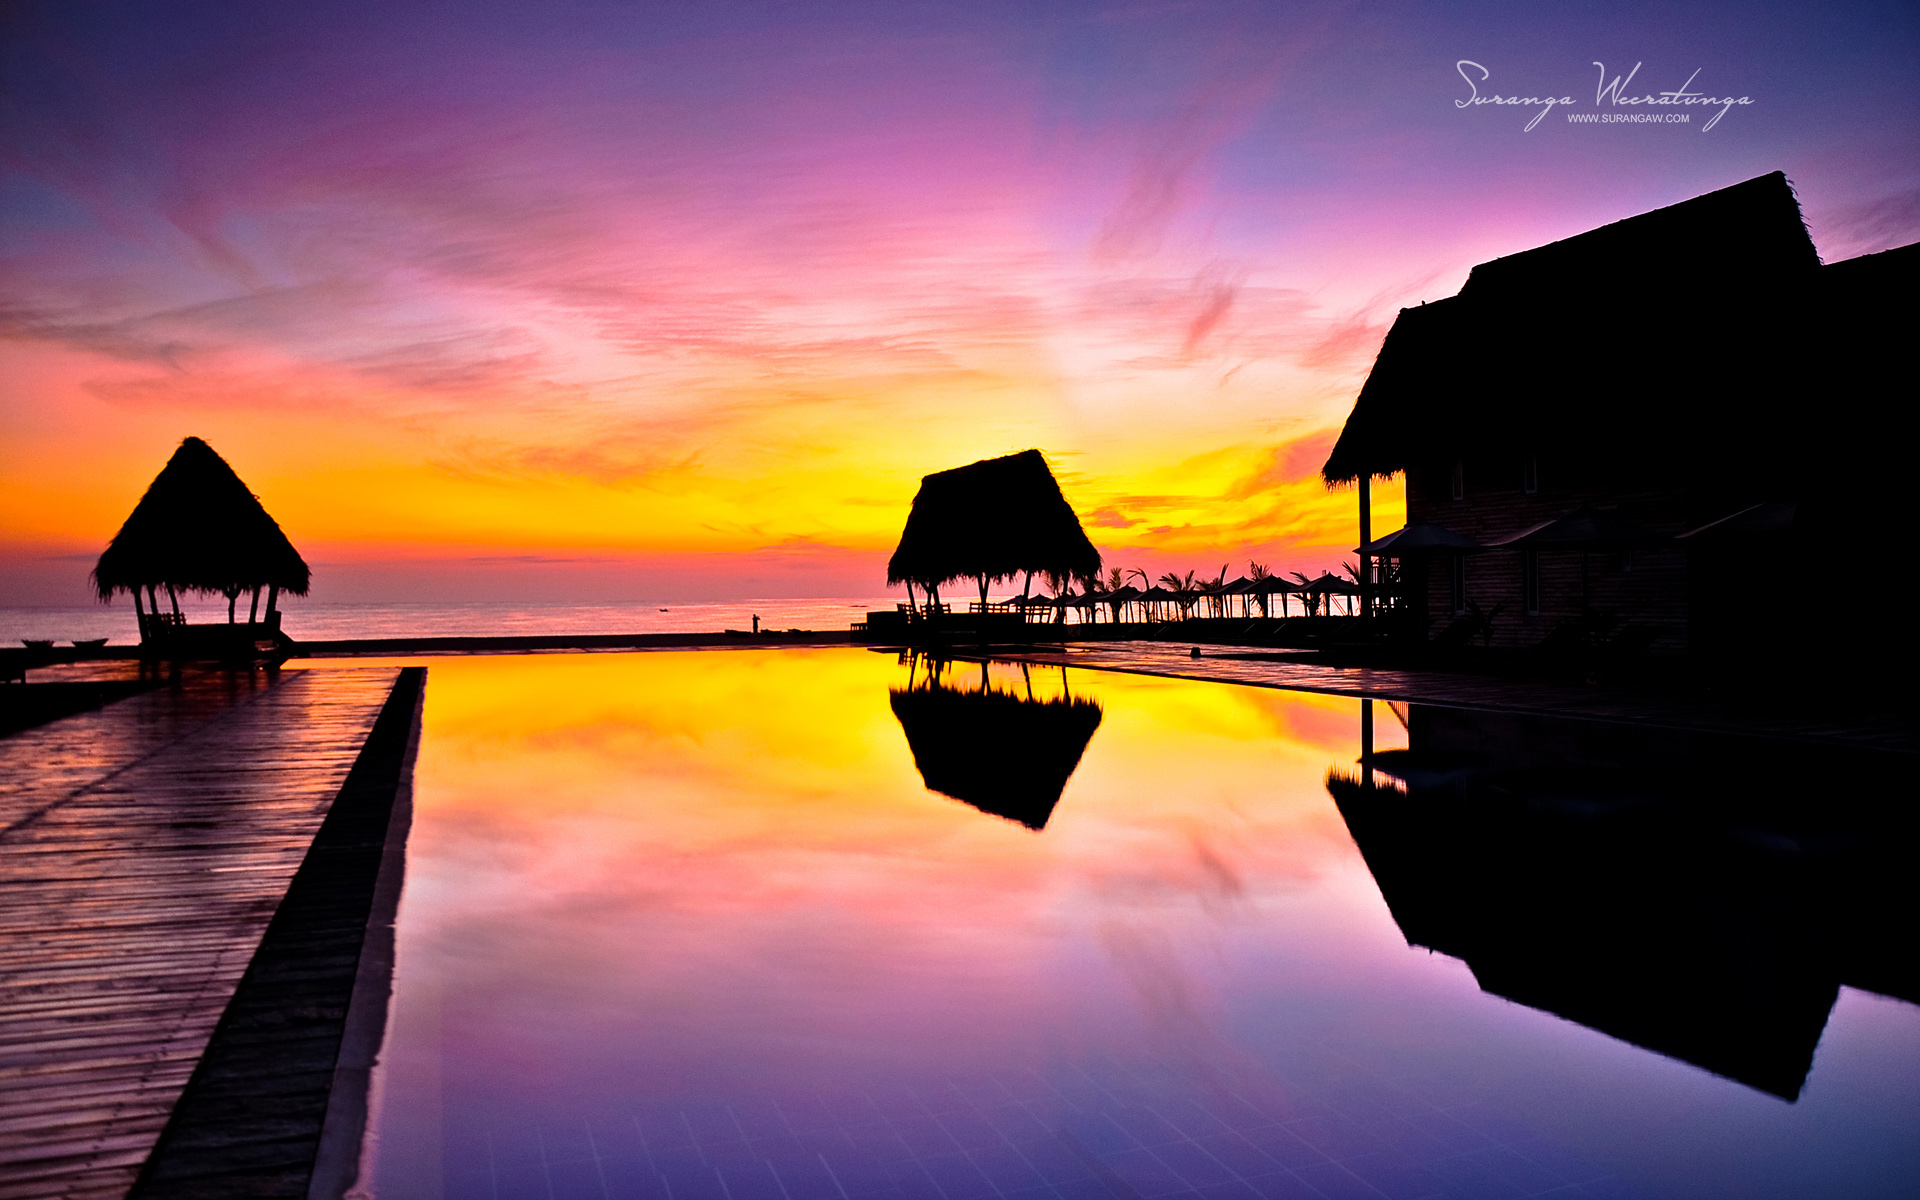 8_surangaweeratunga_srilanka_t_sunset1.jpg